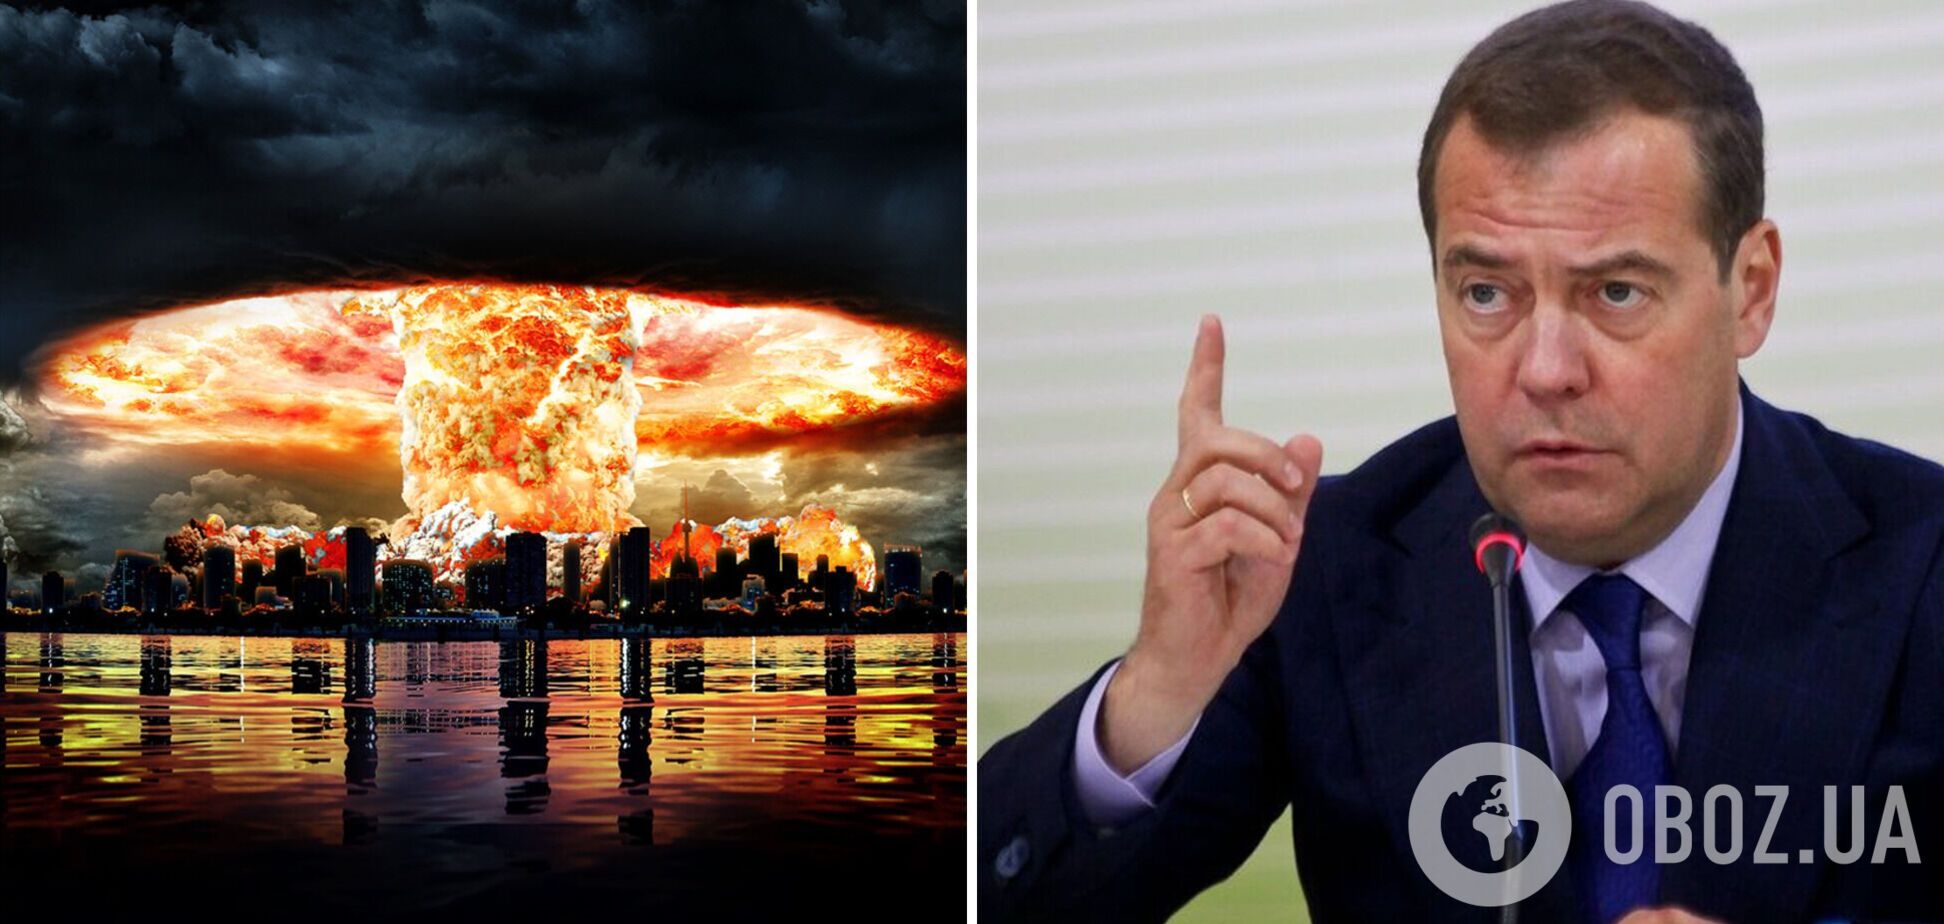 Медведев выдал, что распад России приведет к апокалипсису, и намекнул на ядерный удар